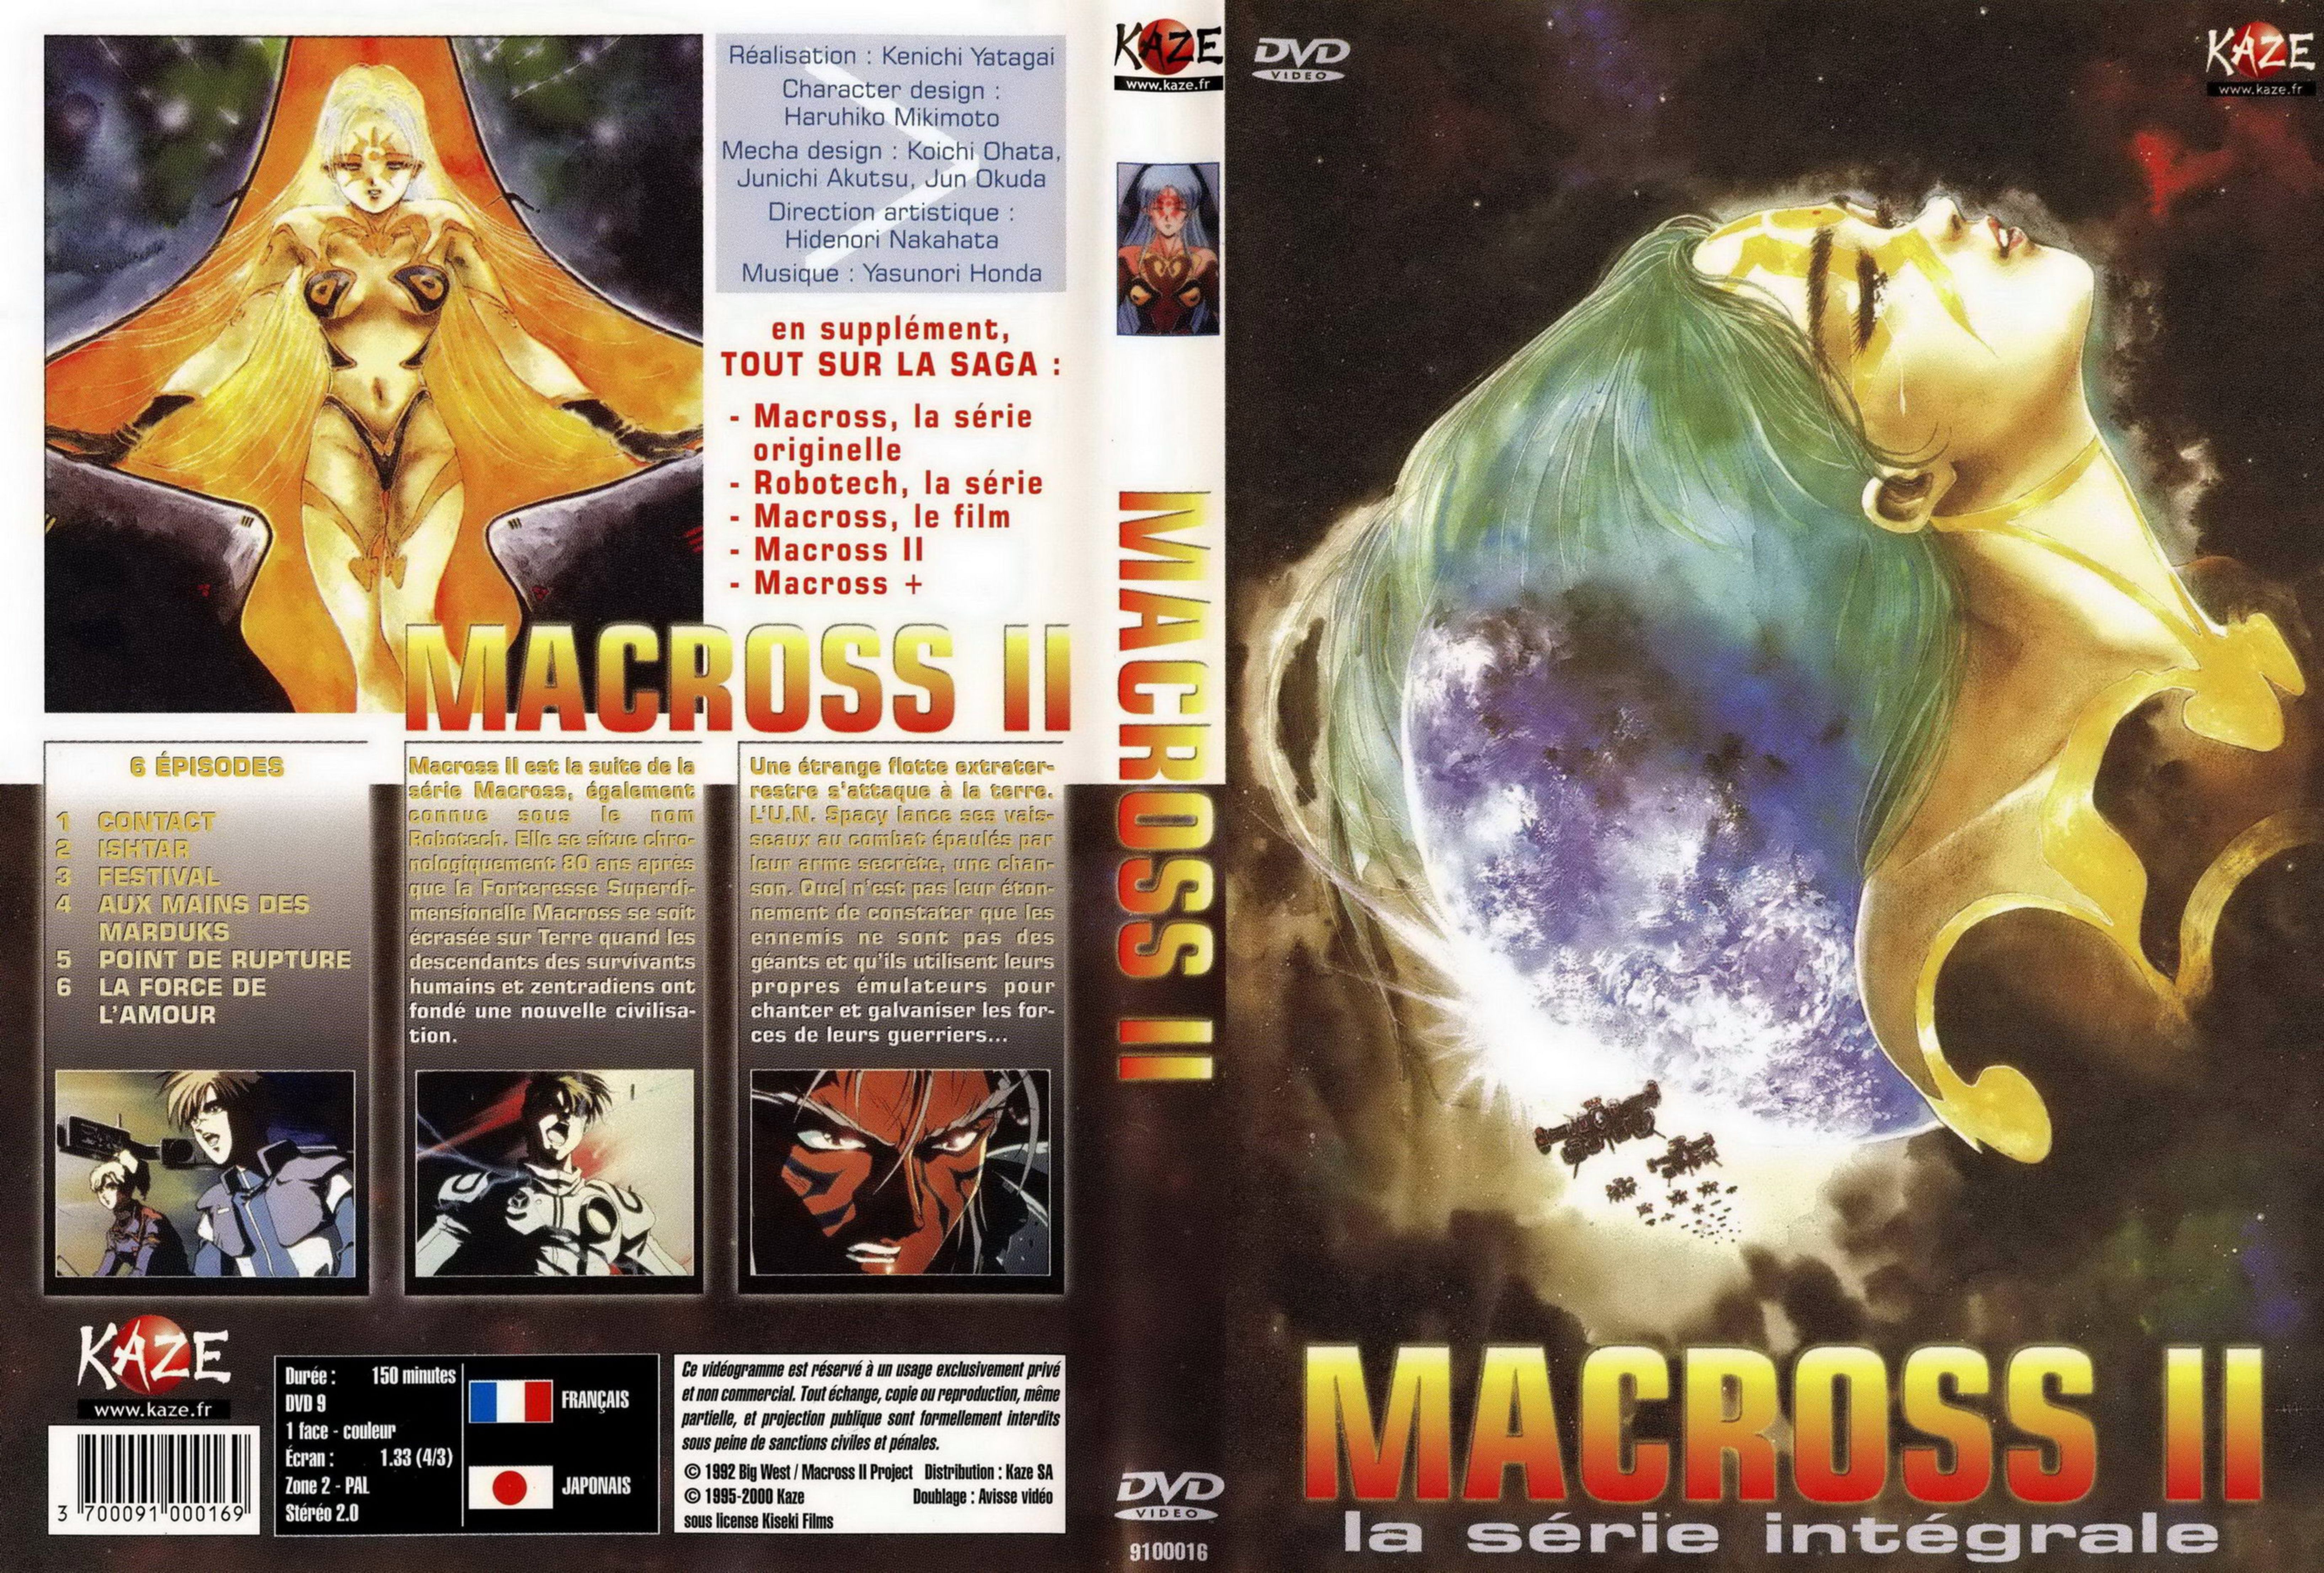 Jaquette DVD Macross 2 v2